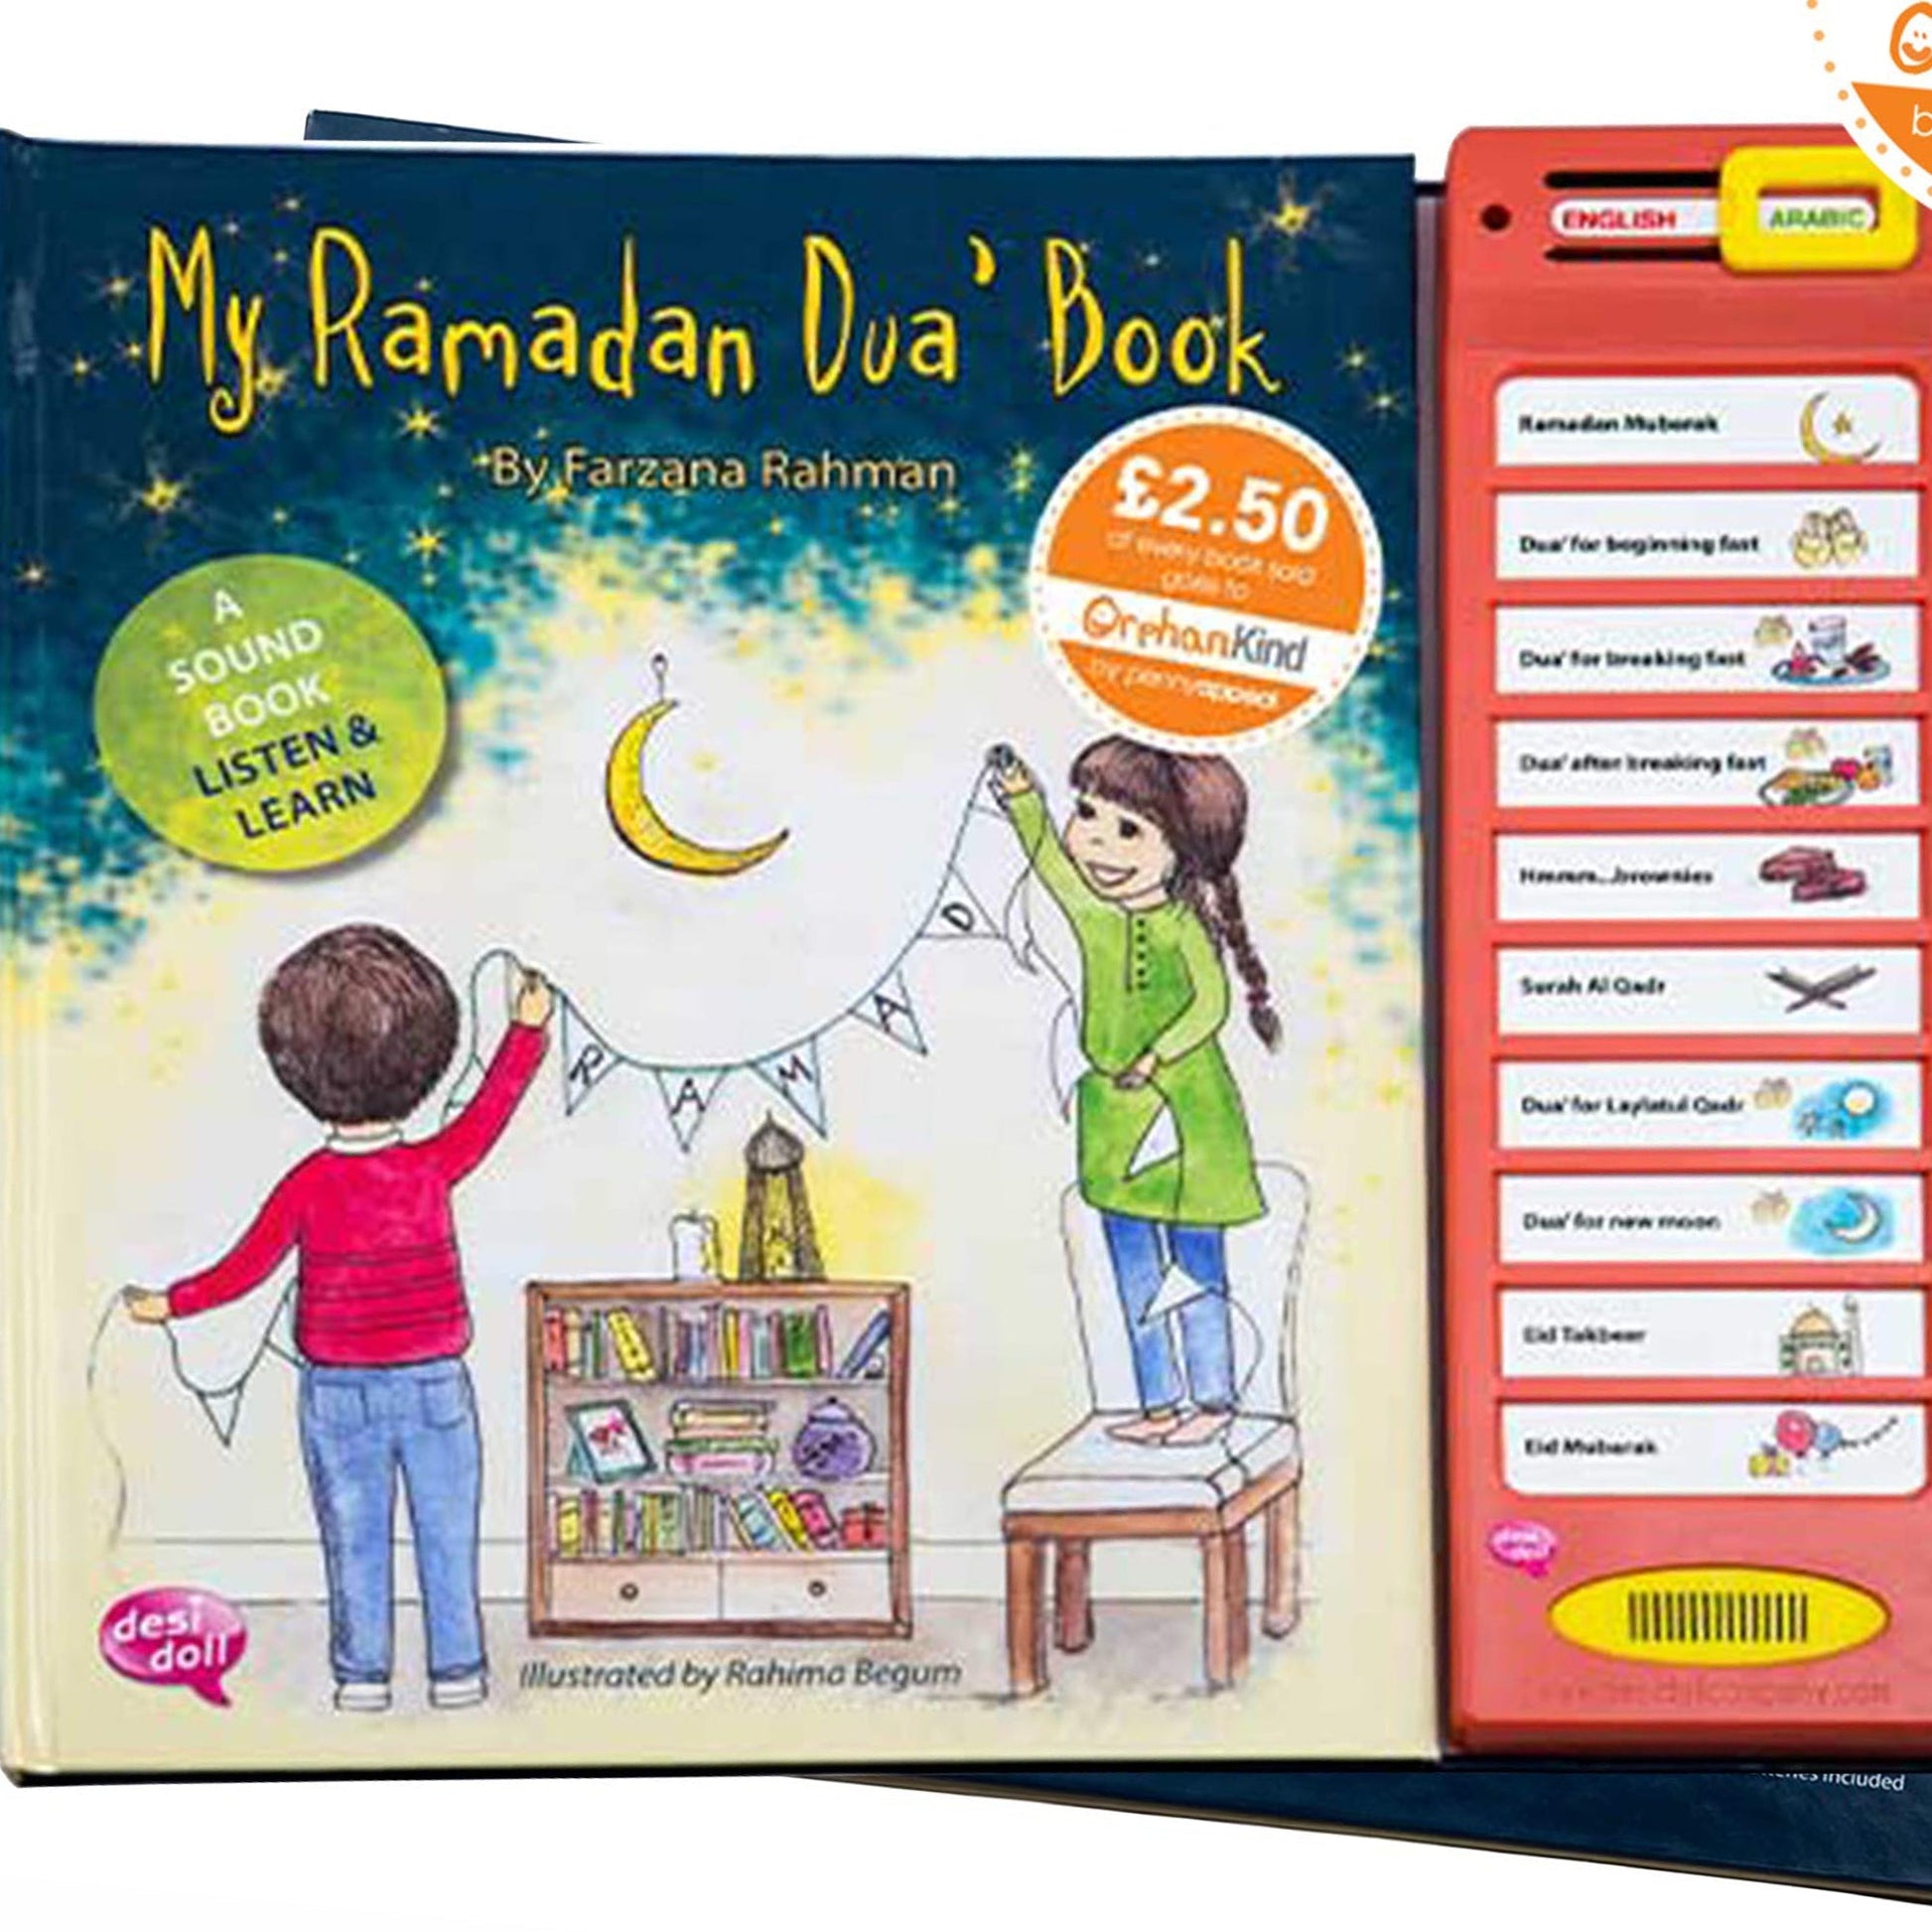 My Ramadan Dua Book by Farzana Rahman-almanaar Islamic Store